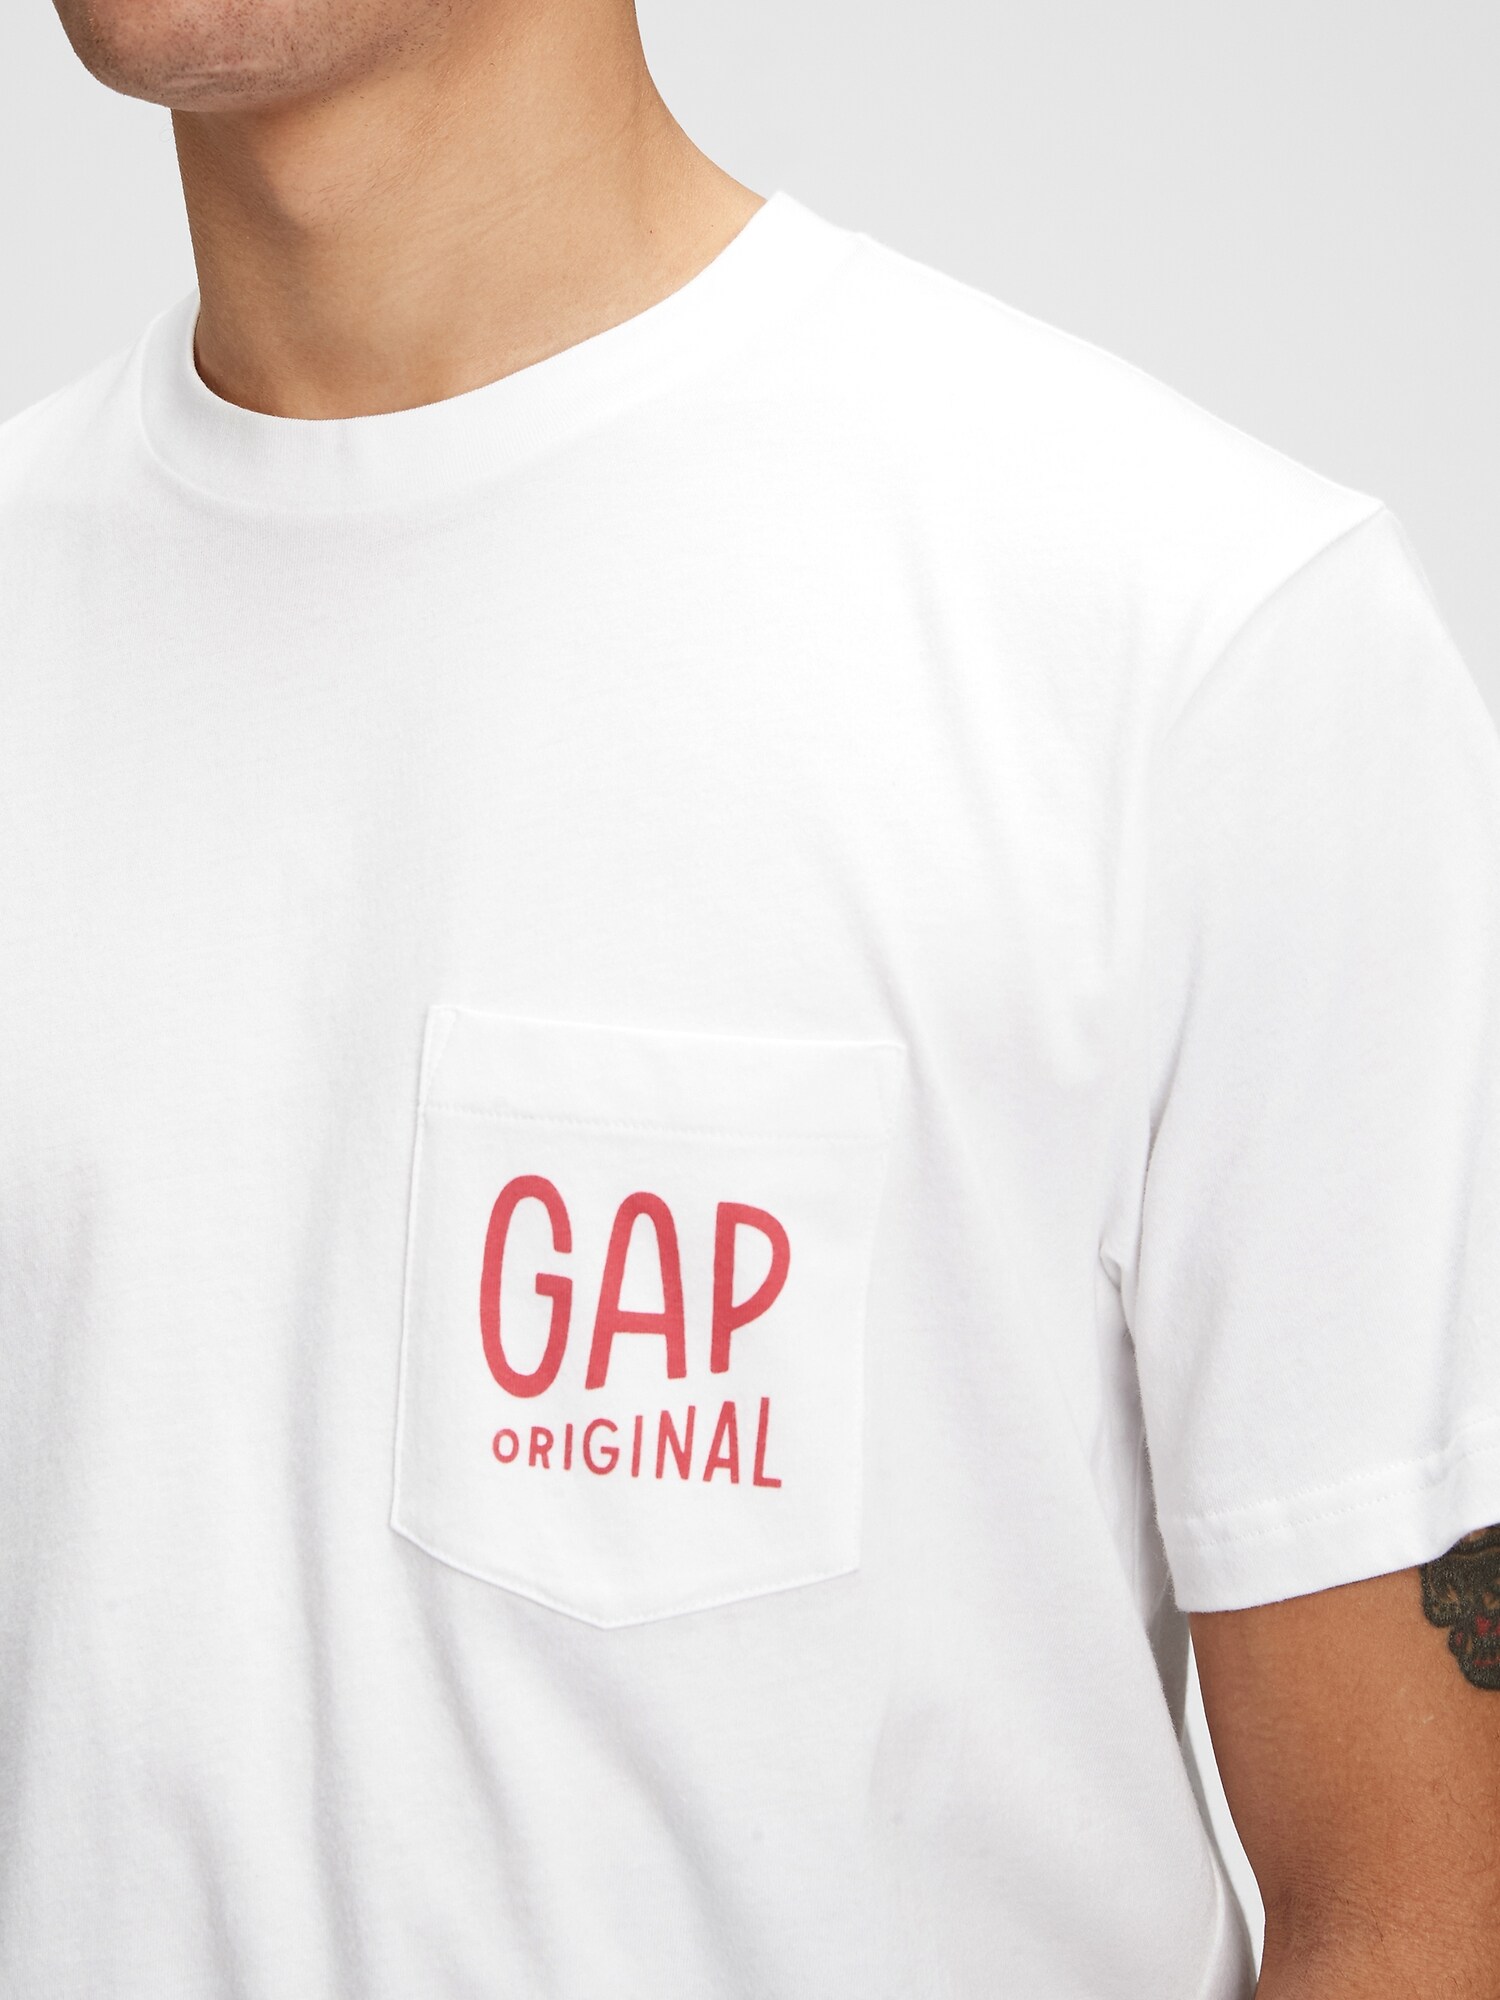 Gap Logo T-Shirt. 5